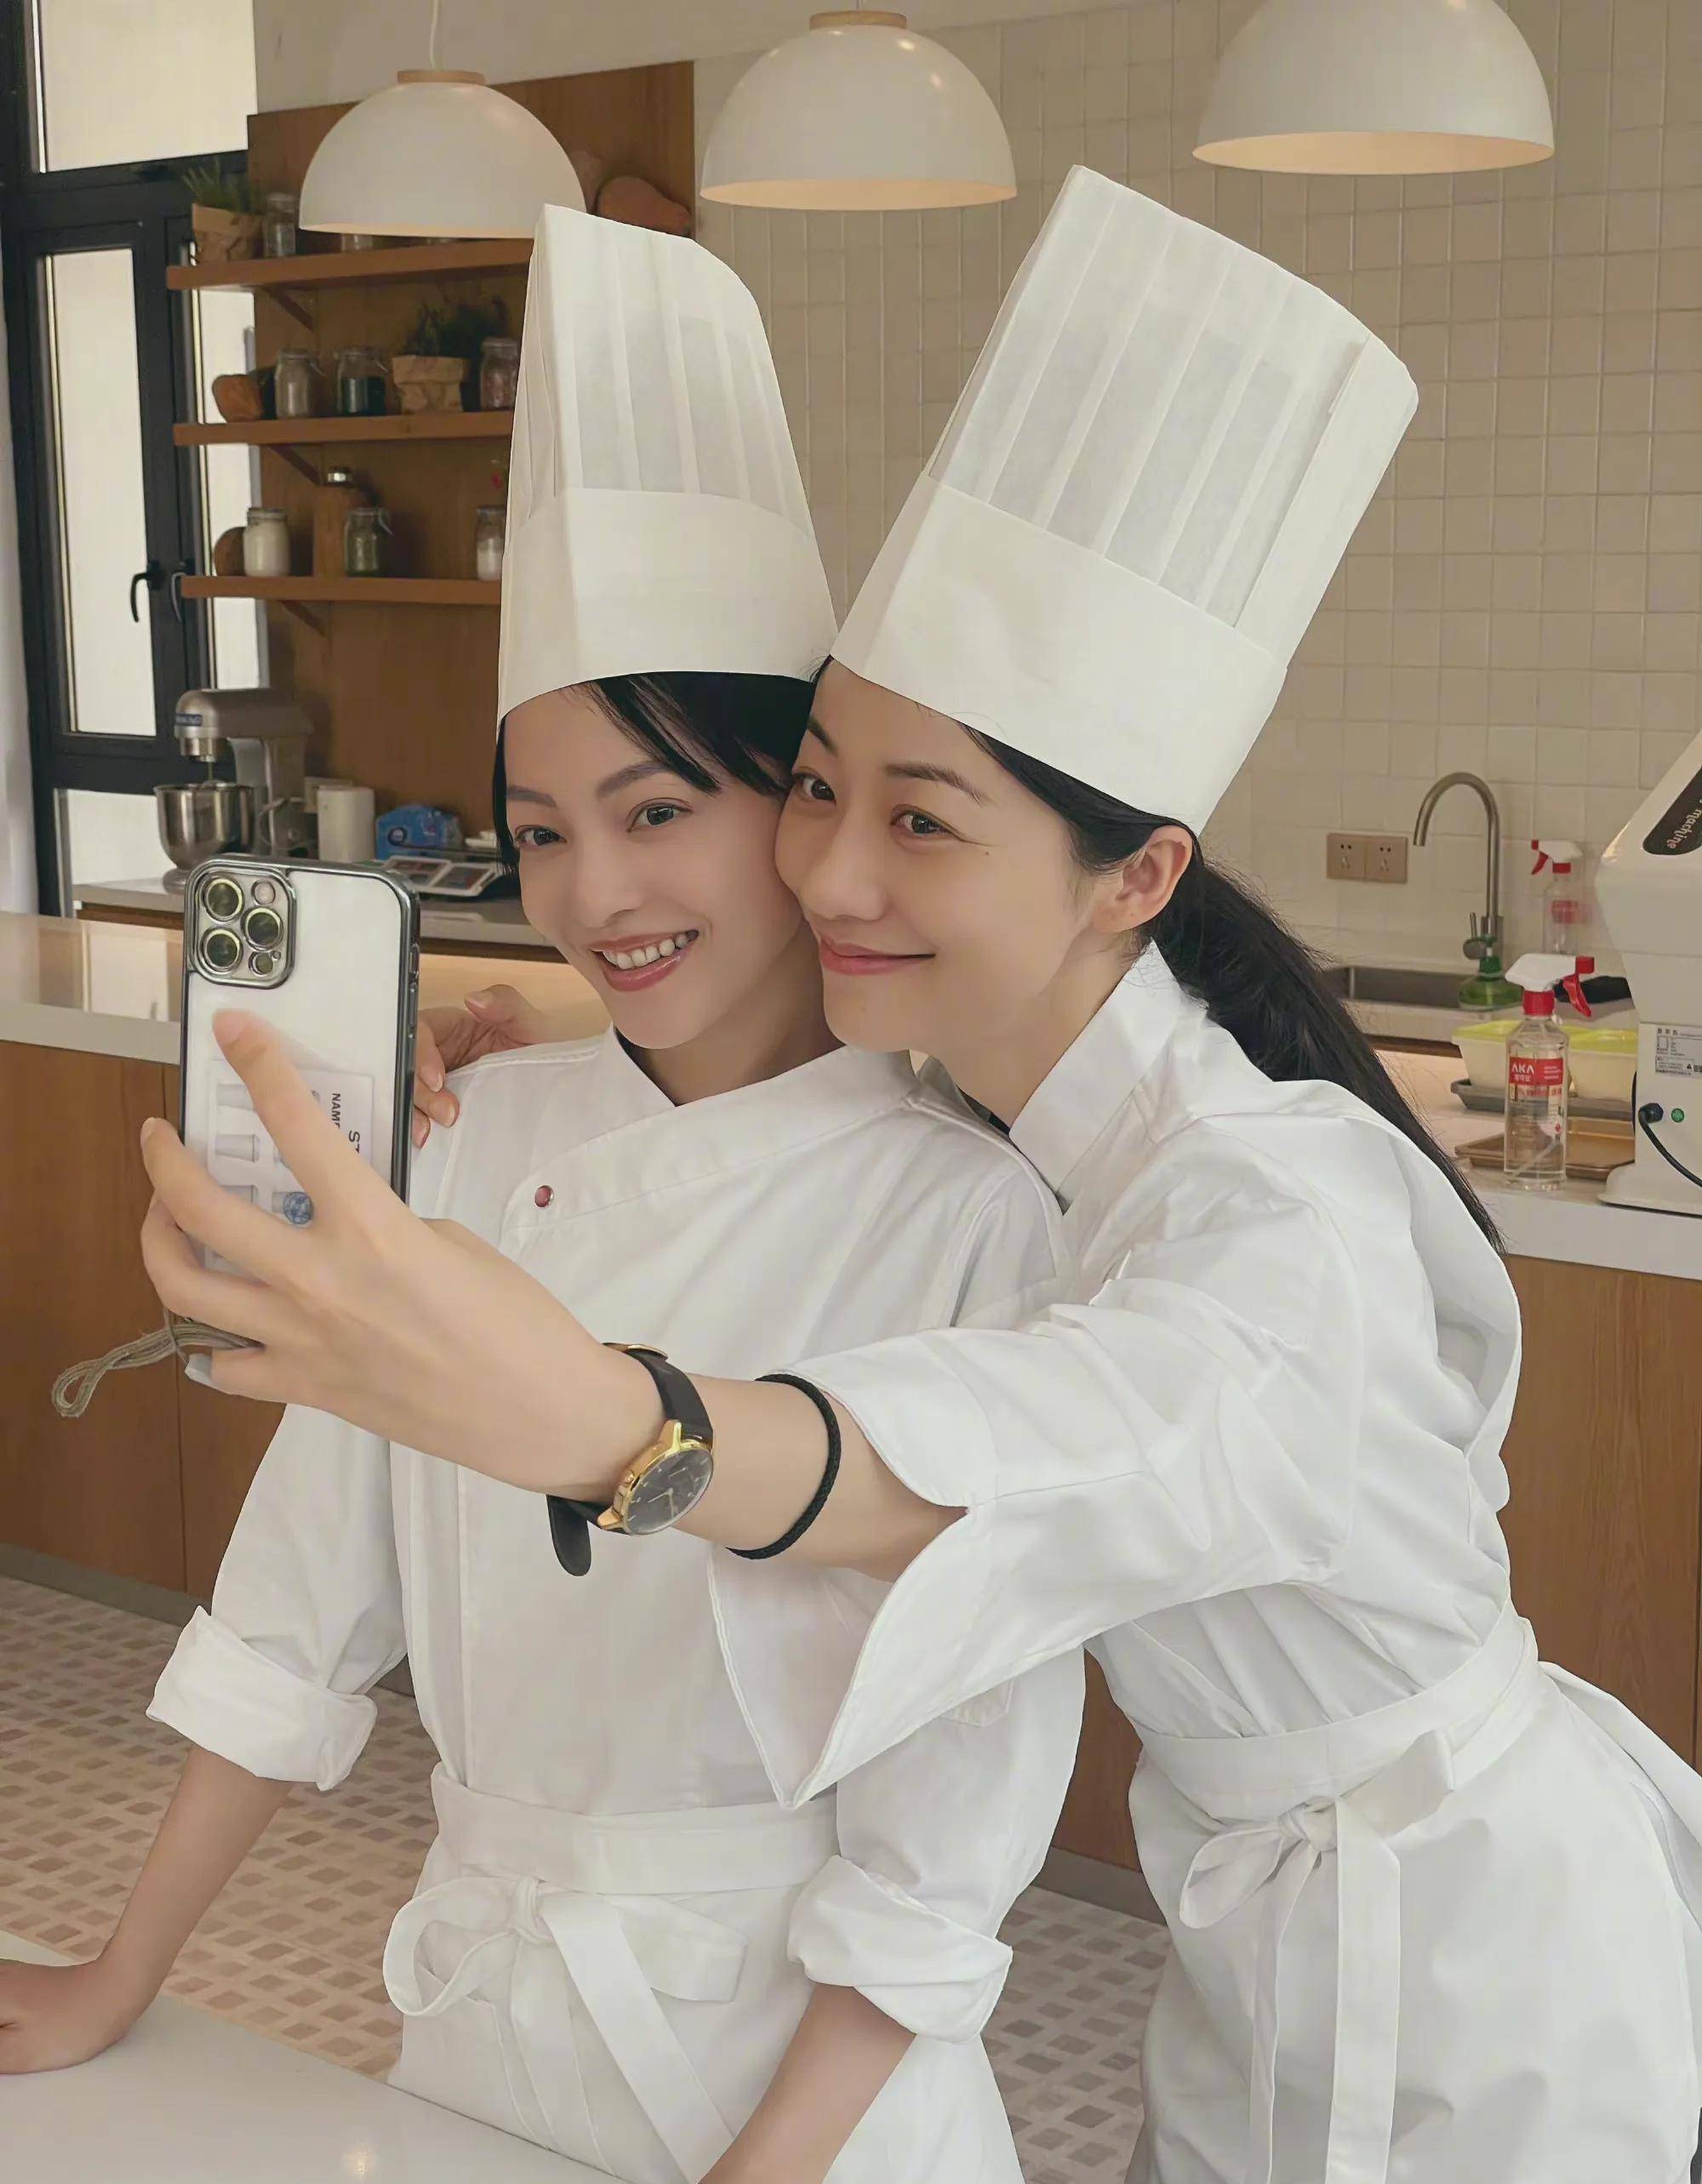 韩雪和张韶涵两人都戴着厨师帽穿着厨师的服装,两人脸贴脸合照看起来